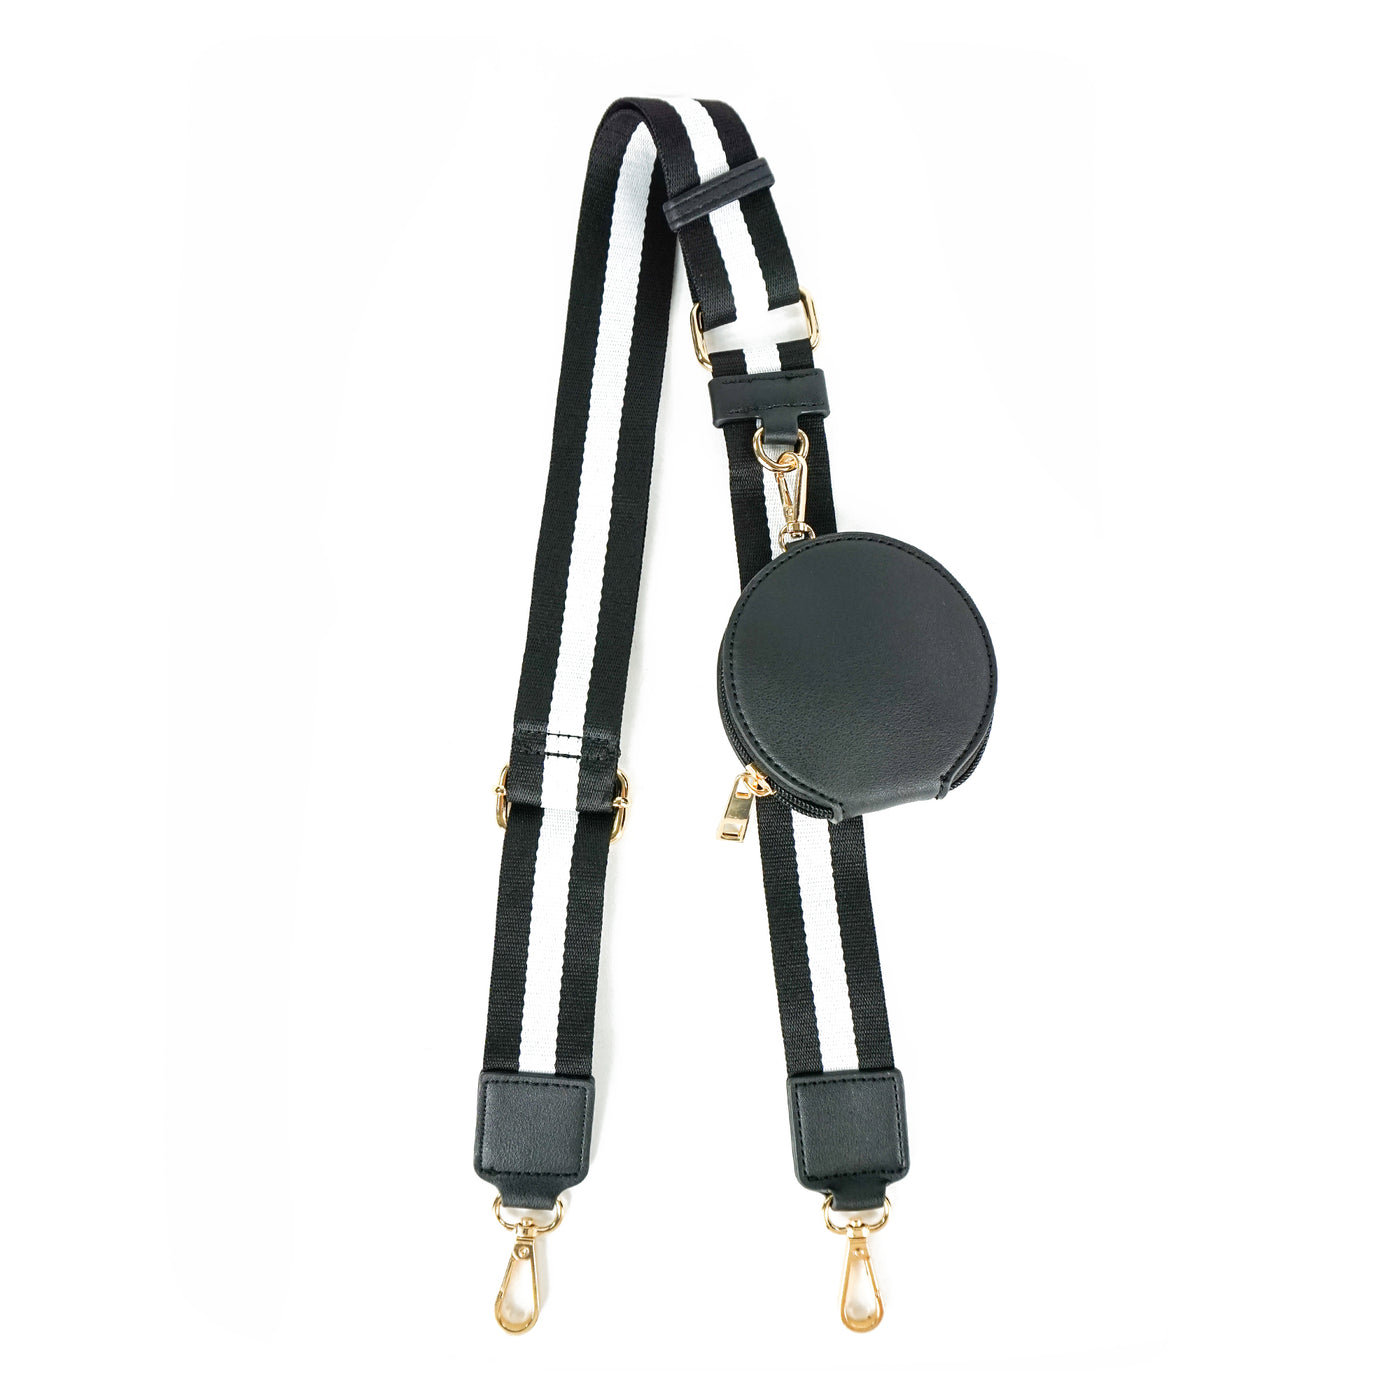  CooBigo wide purse straps replacement crossbody straps